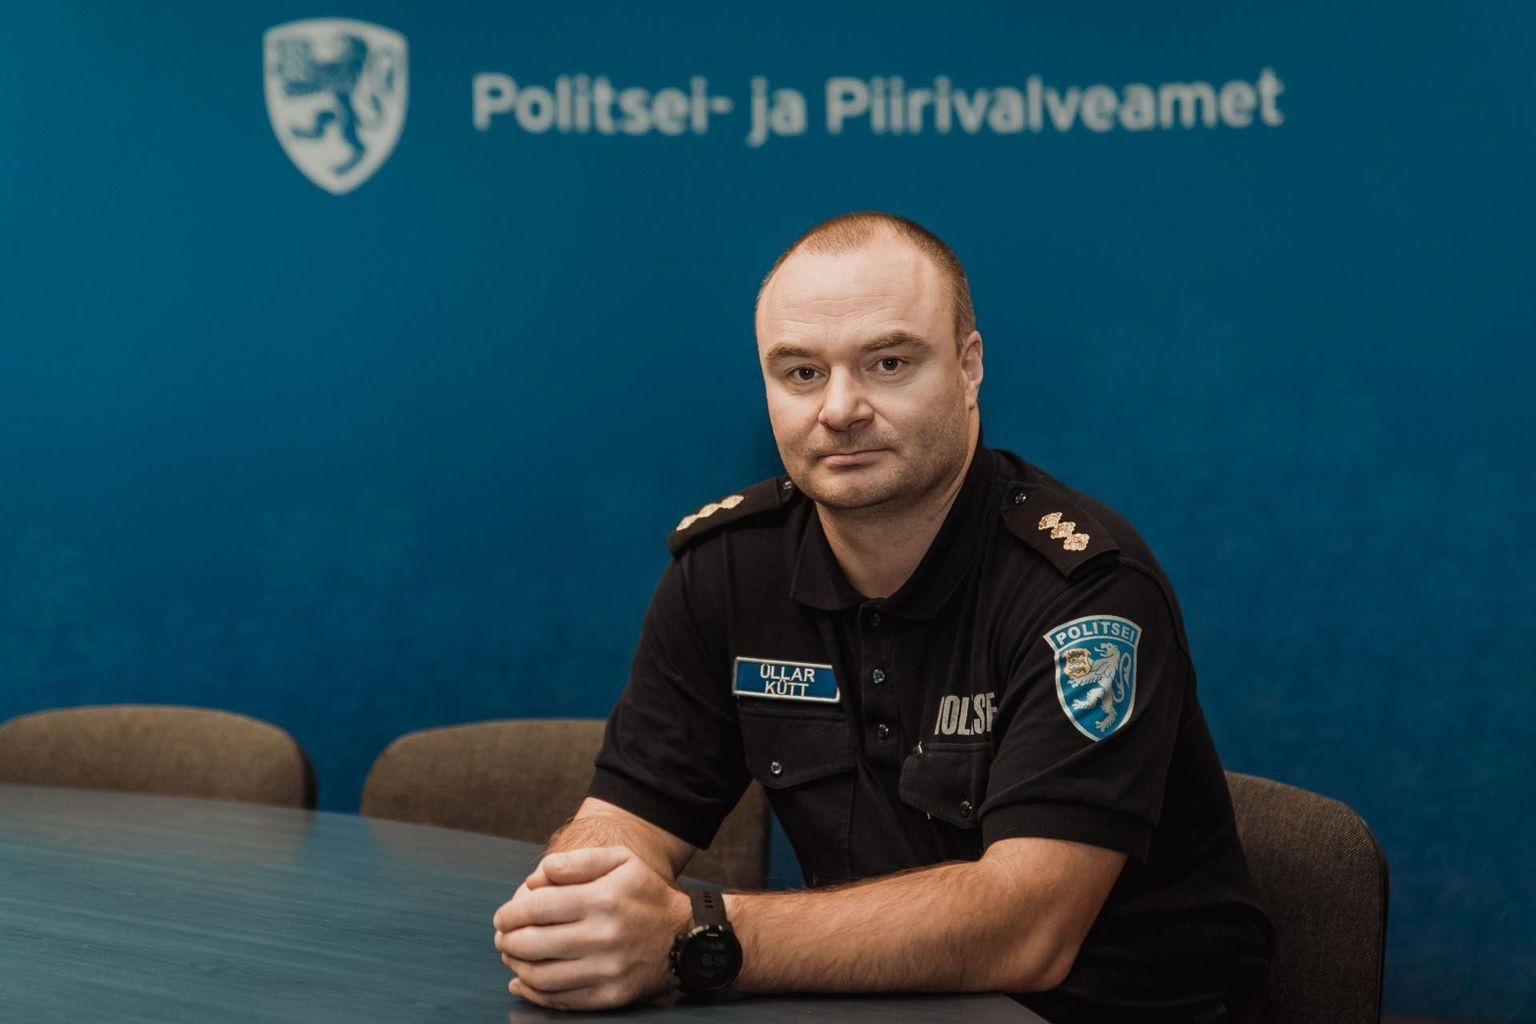 Pärnu politseijaoskonna juht Üllar Kütt tõdes, et siin kandis on jätkuvalt suur probleem narkootikumide kerge kättesaadavus.